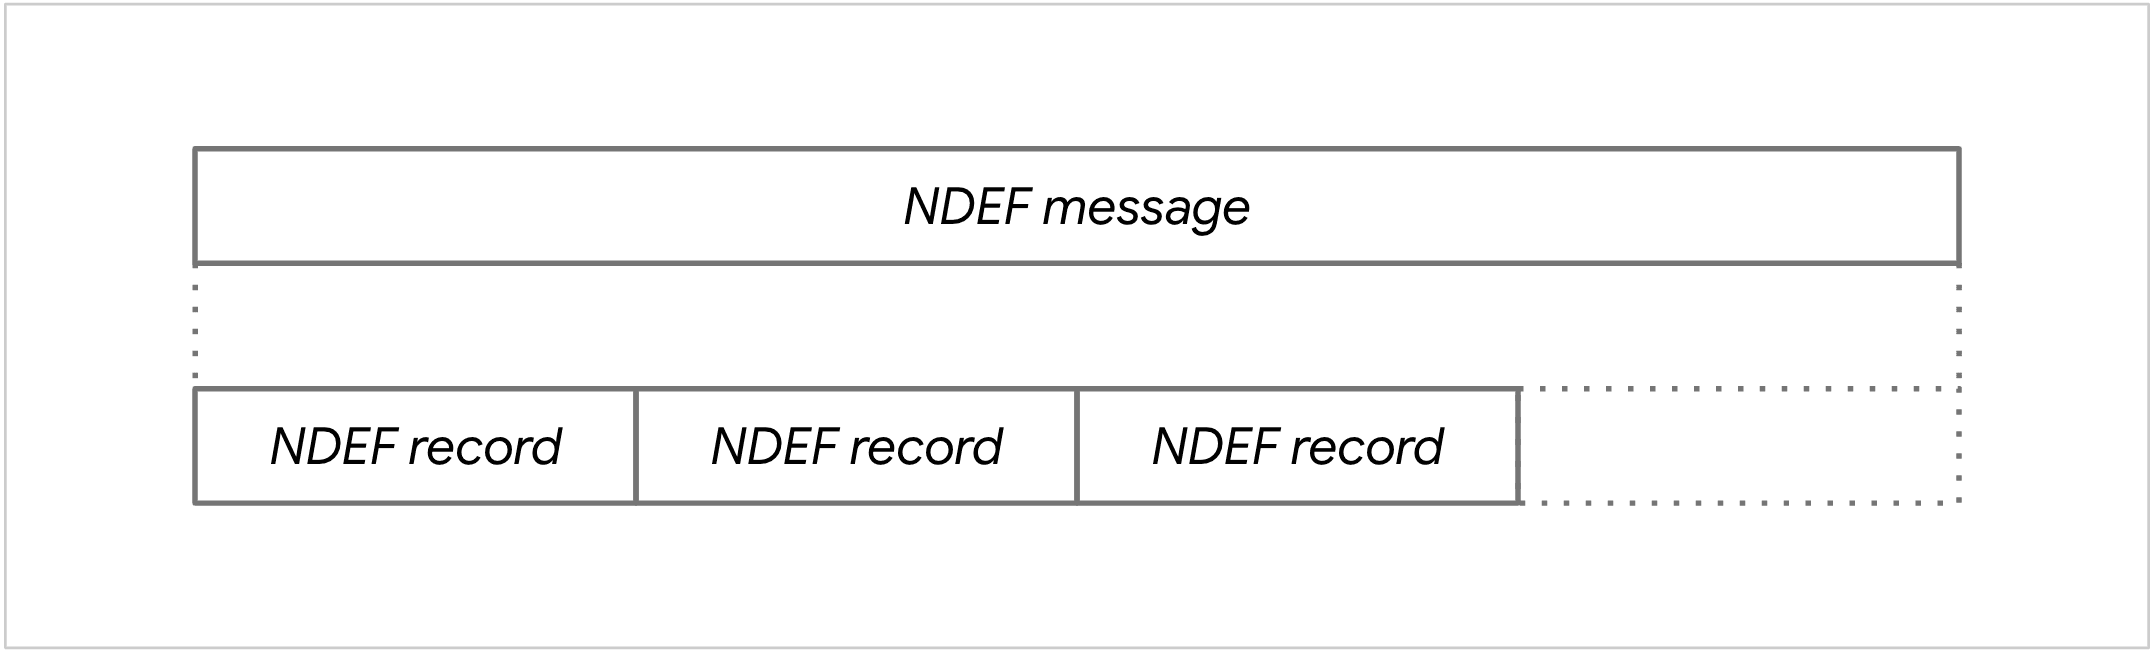 แผนภาพของข้อความ NDEF